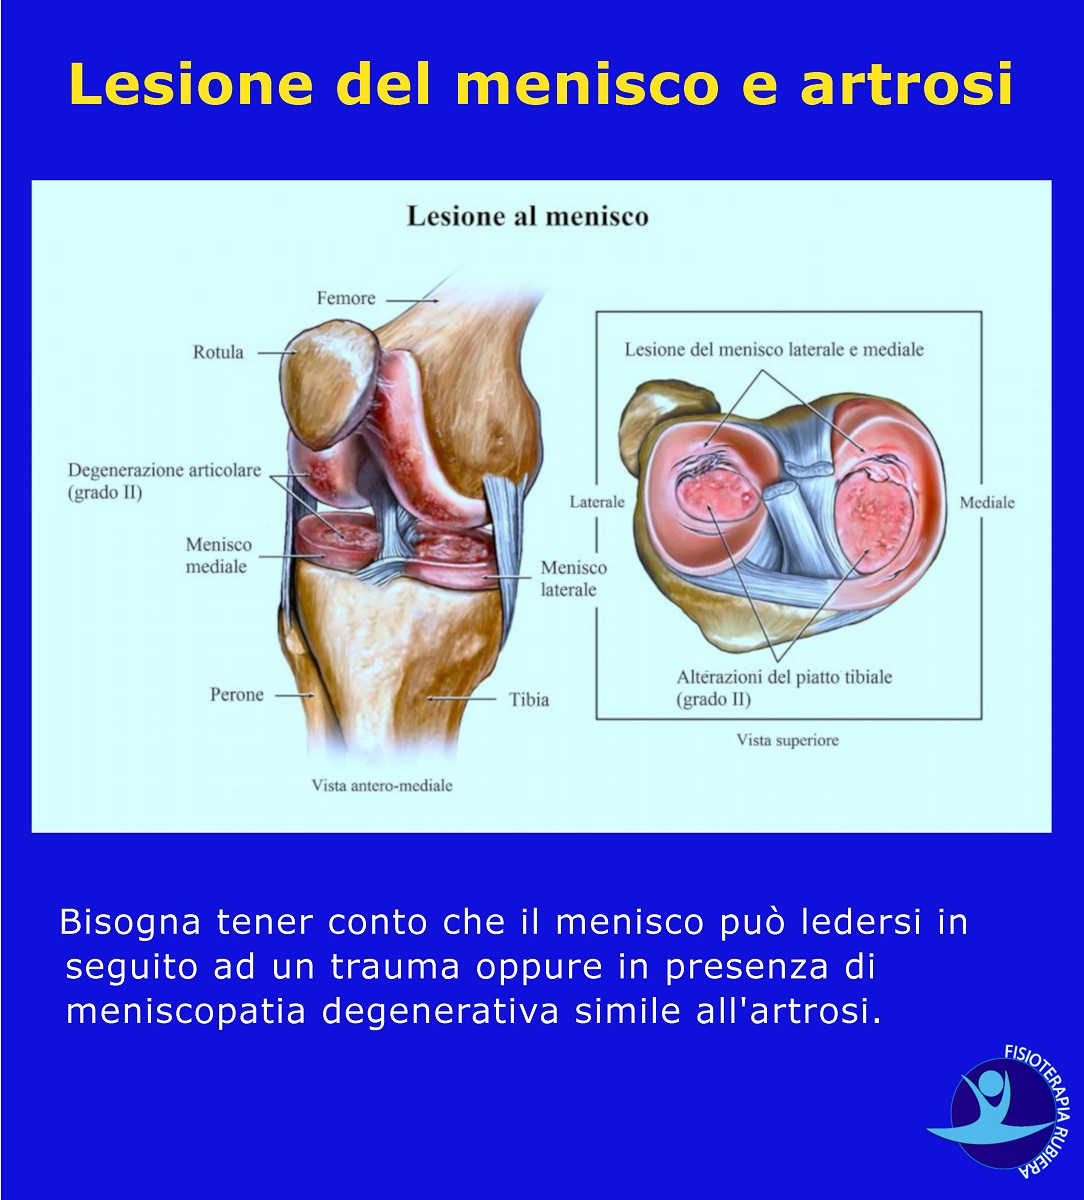 Lesione del menisco e artrosi